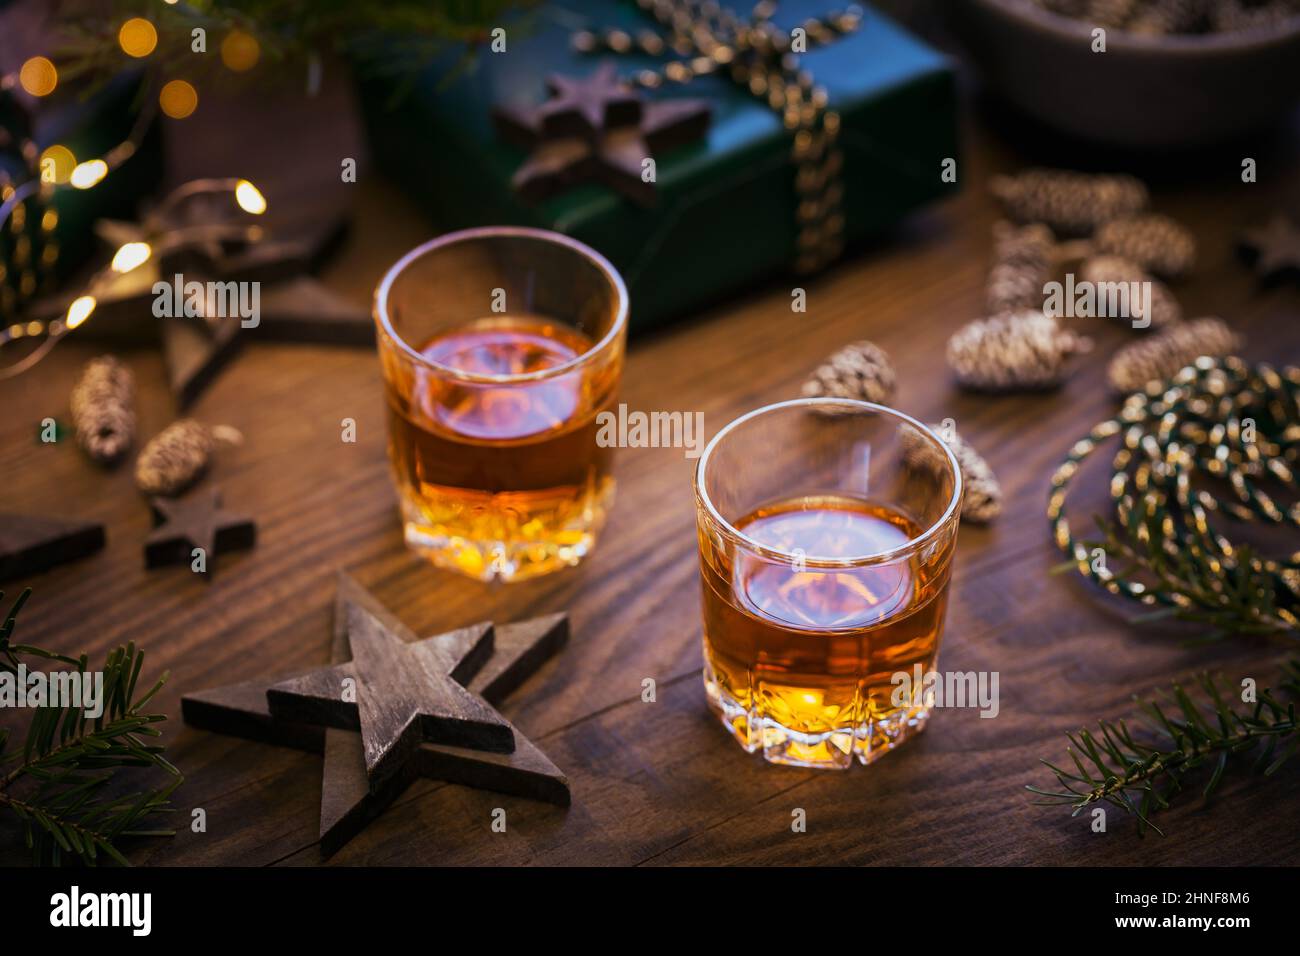 Dos copas de whisky o bourbon con decoración de vacaciones sobre fondo de madera. Año Nuevo, Navidad y vacaciones de invierno concepto de humor whisky Foto de stock